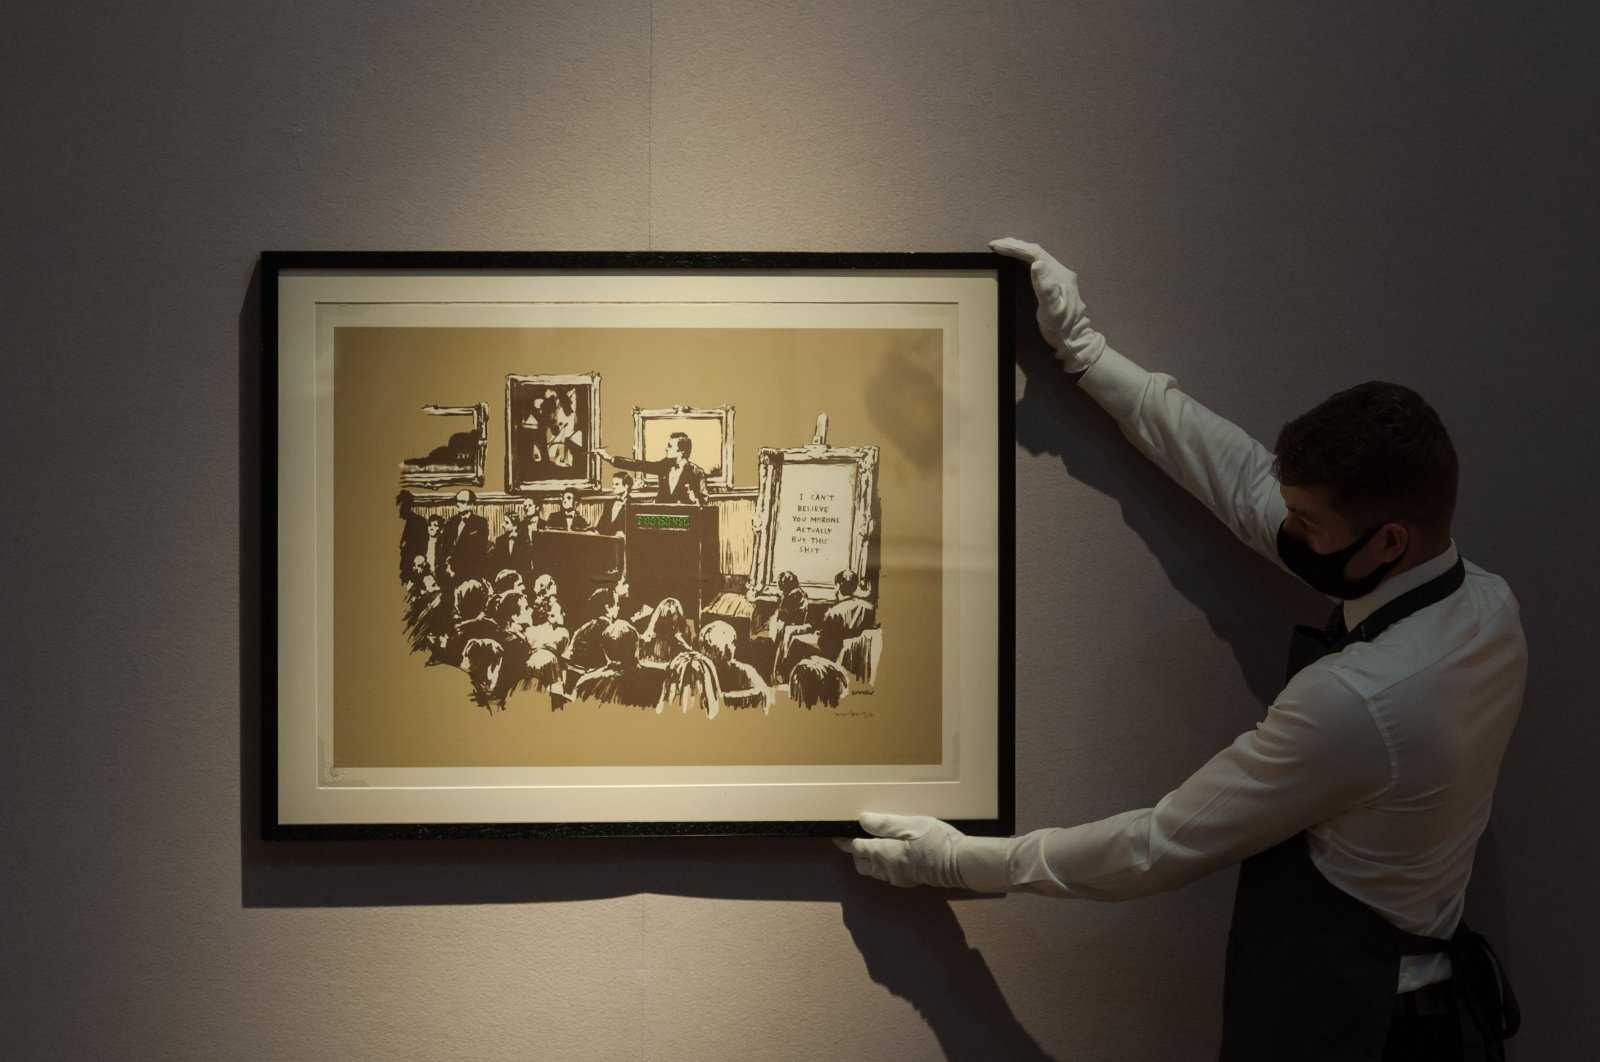 Картина «игра в жмурки» художника константина маковского была продана 27 ноября 2018 года на аукционе sotheby’s